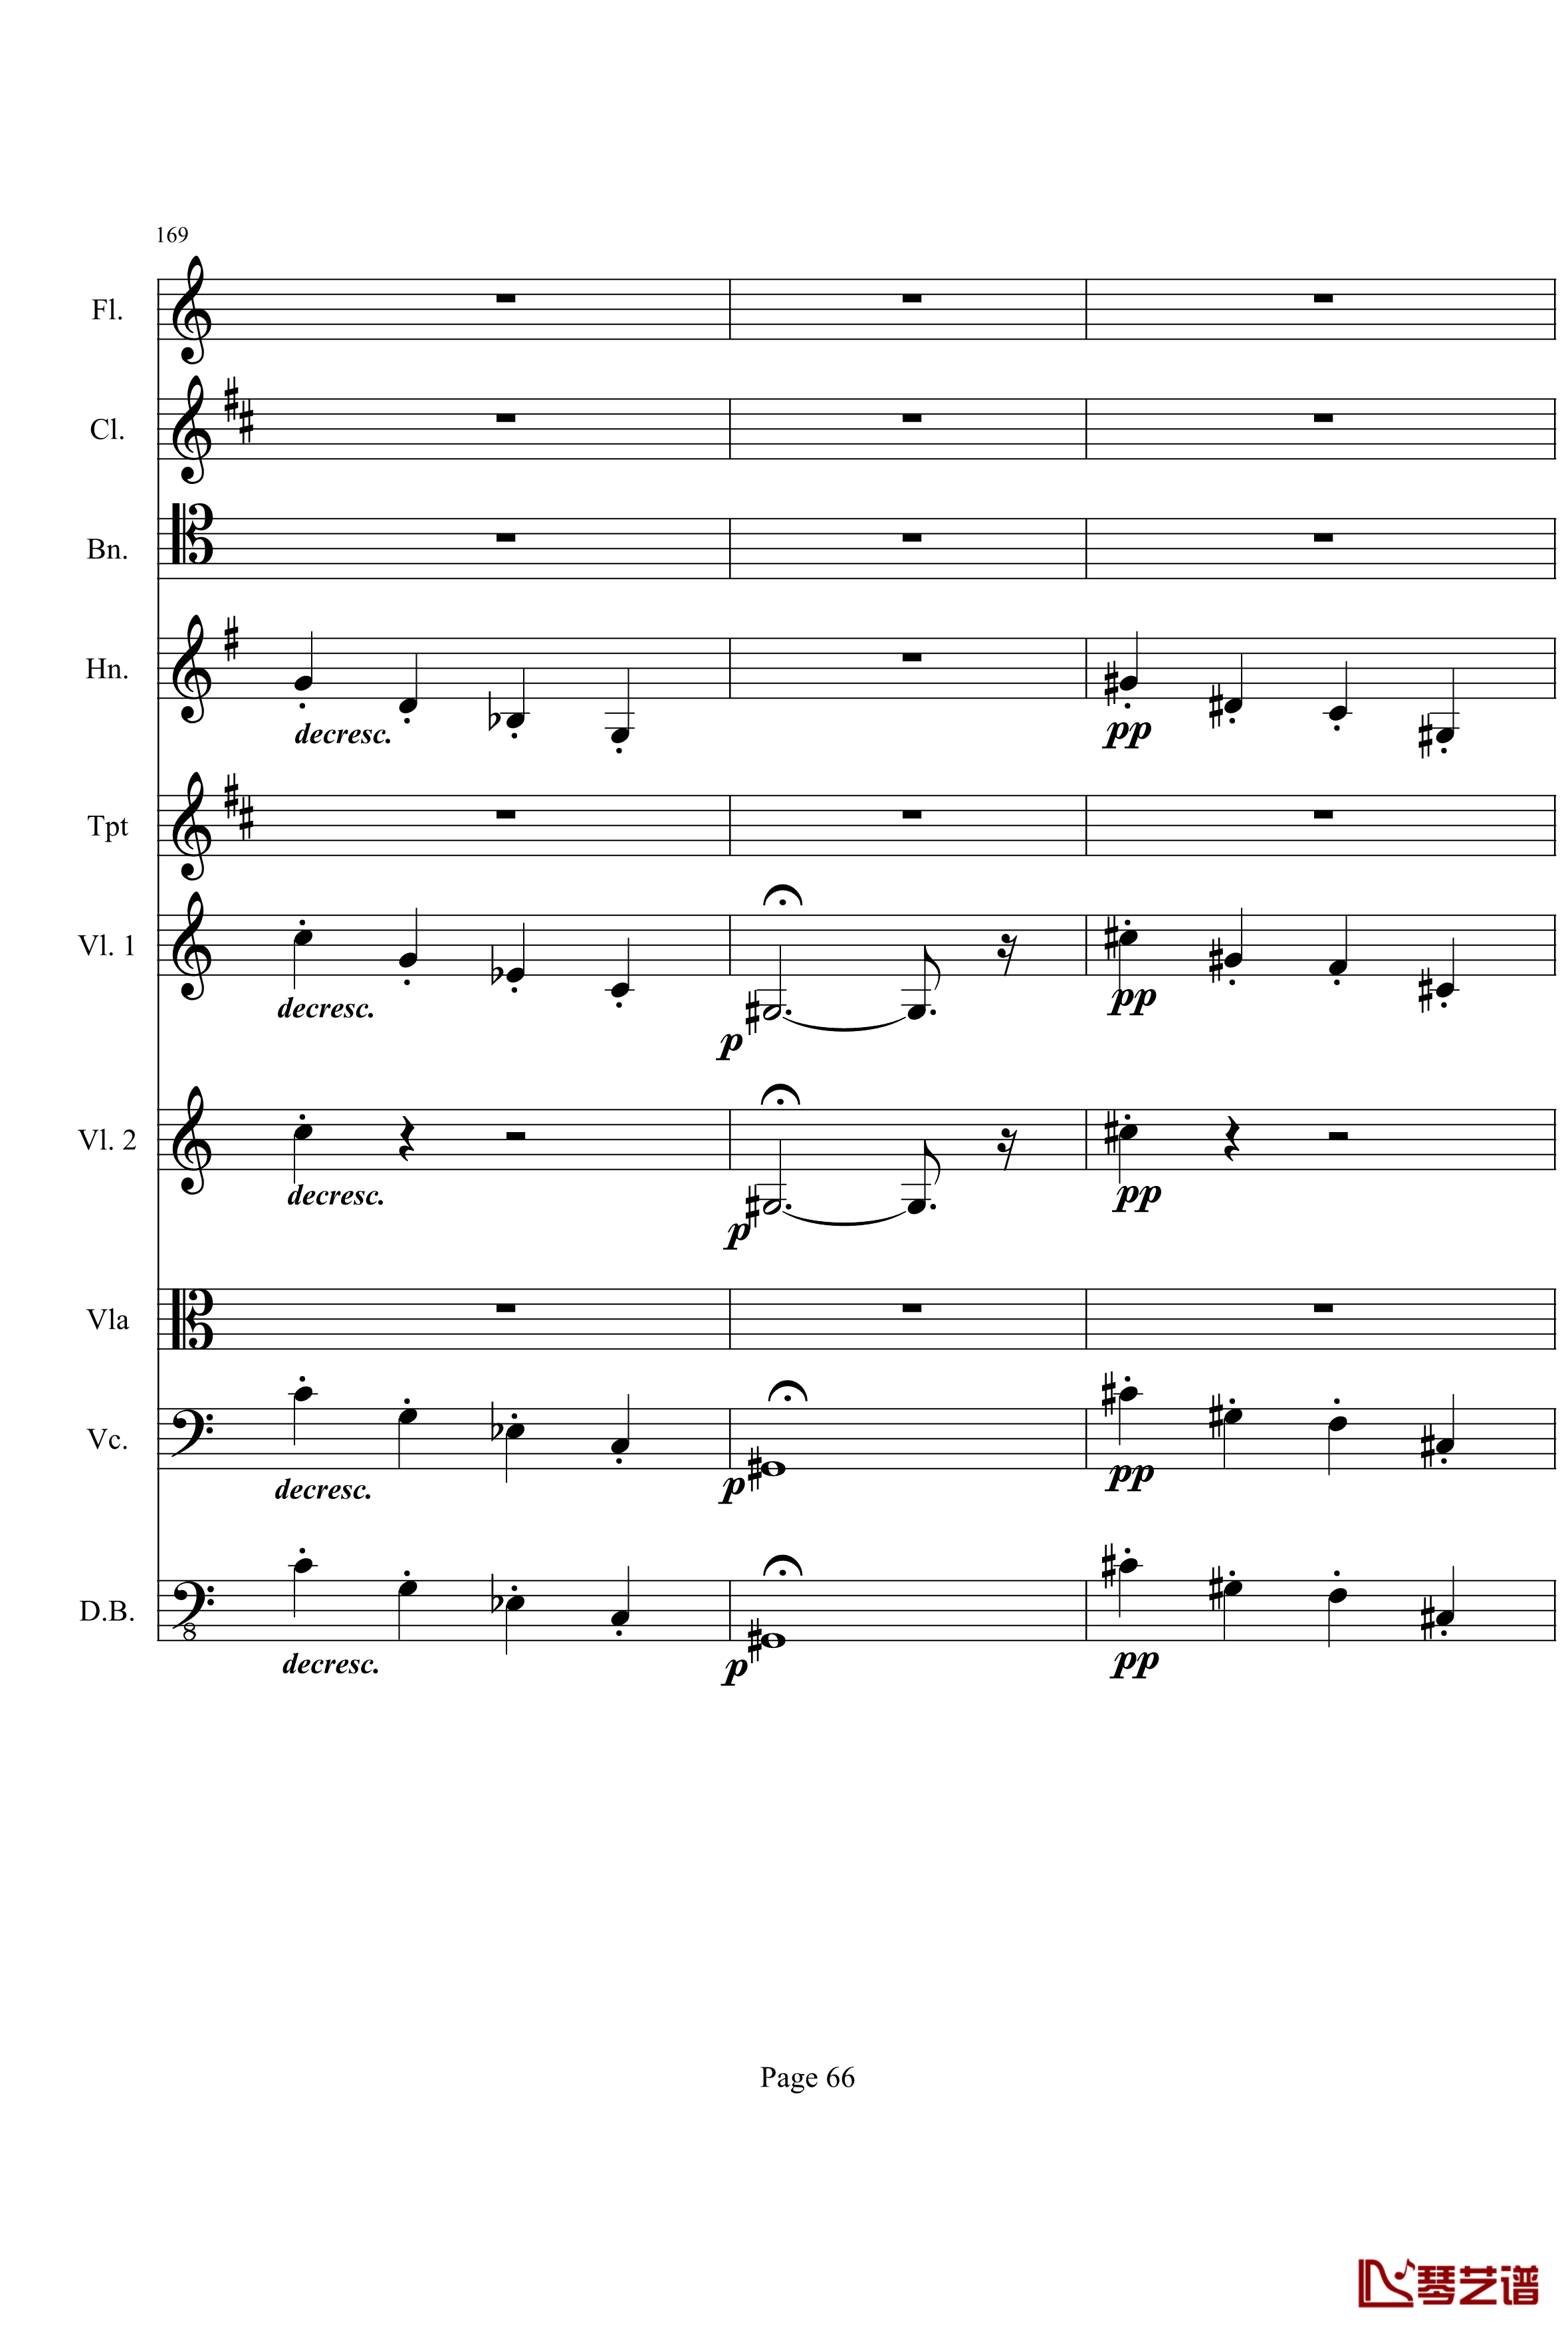 奏鸣曲之交响钢琴谱-第21首-Ⅰ-贝多芬-beethoven66